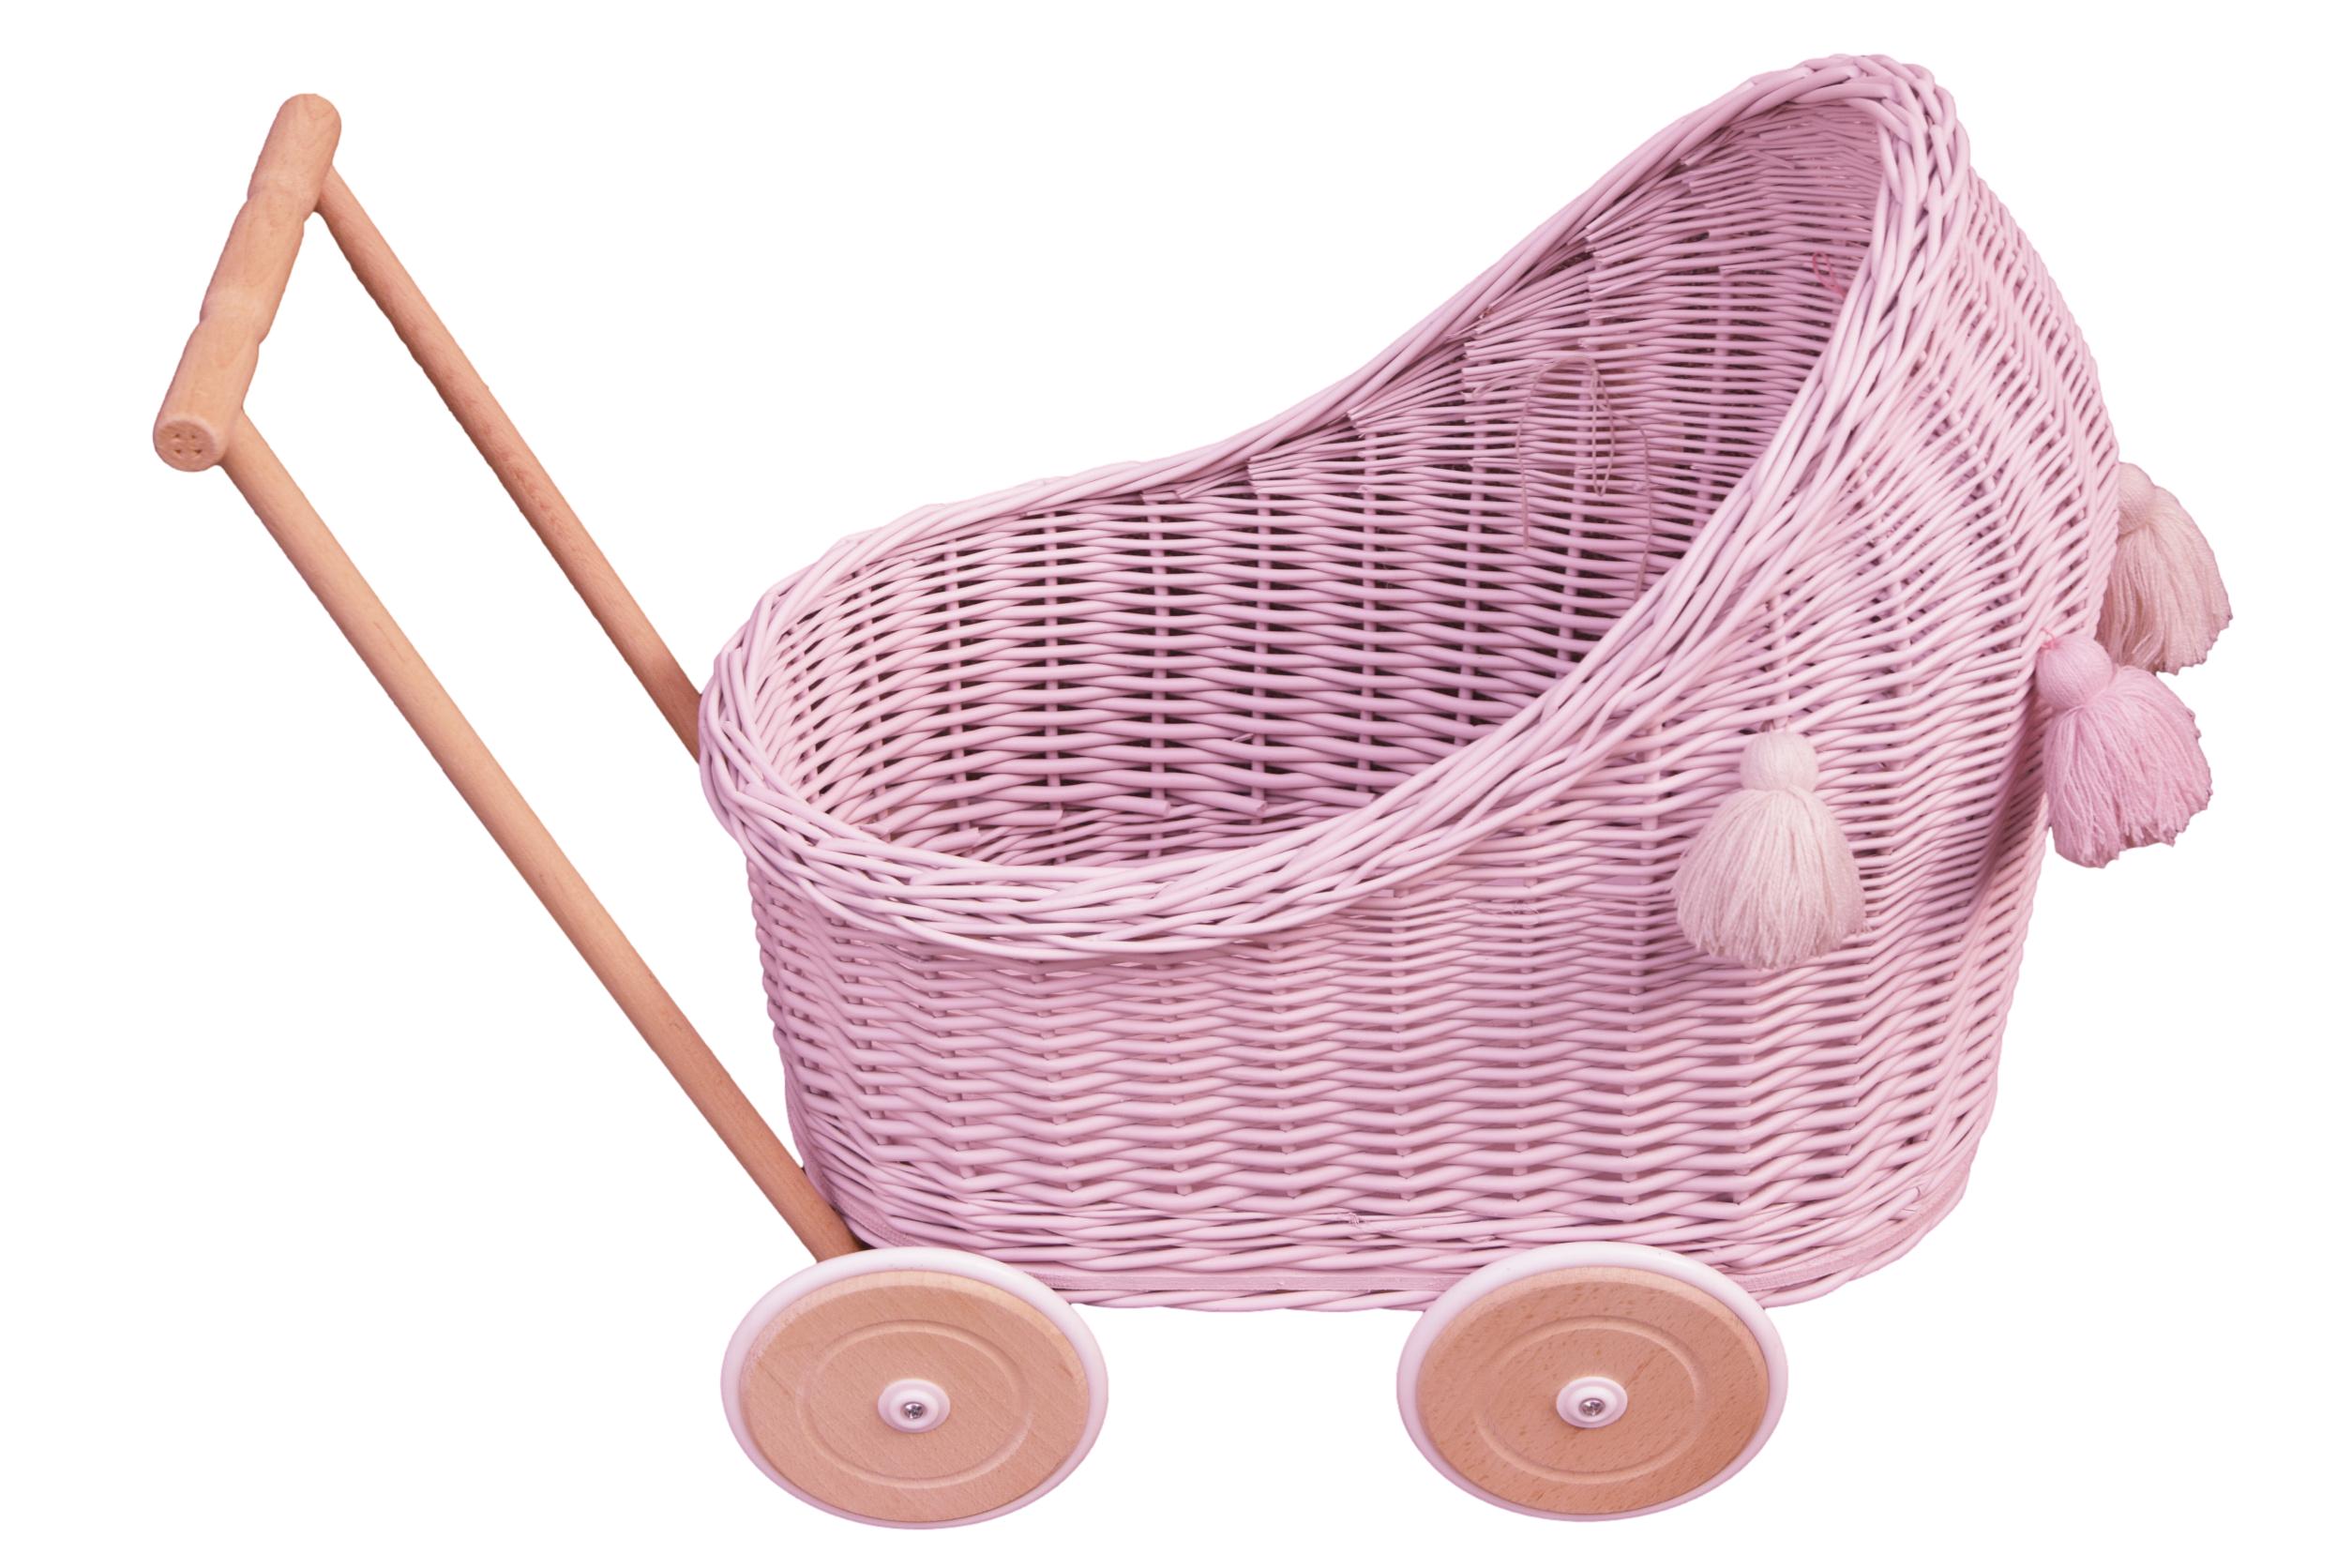 Wiklinowy wózek dla lalek w kolorze różowym z chwostami